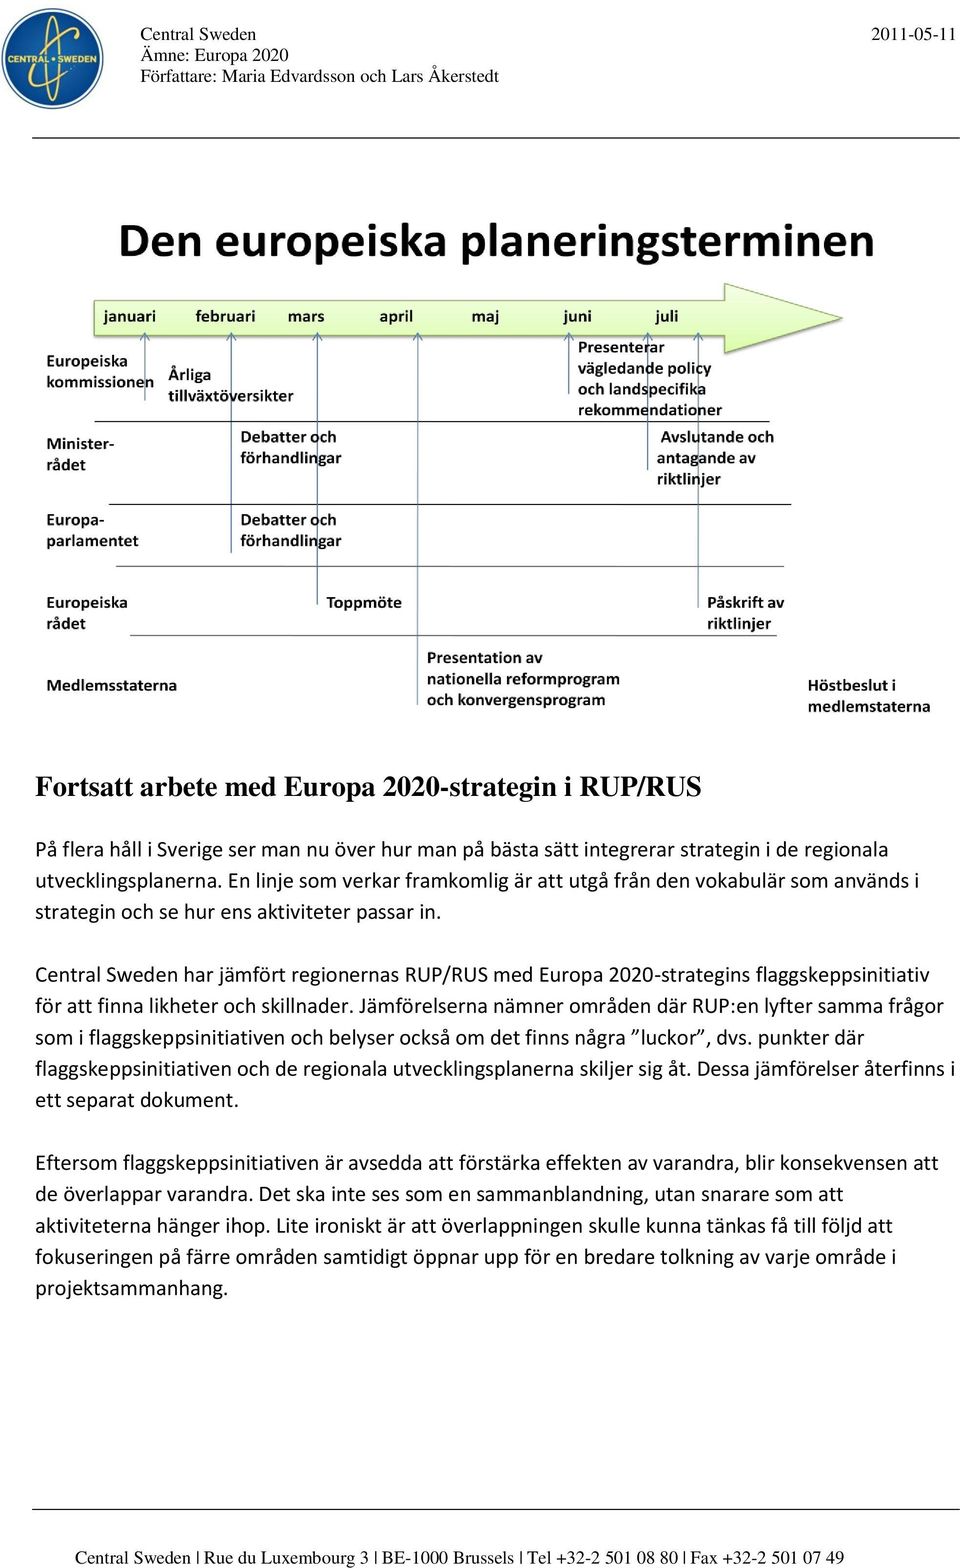 Central Sweden har jämfört regionernas RUP/RUS med Europa 2020-strategins flaggskeppsinitiativ för att finna likheter och skillnader.